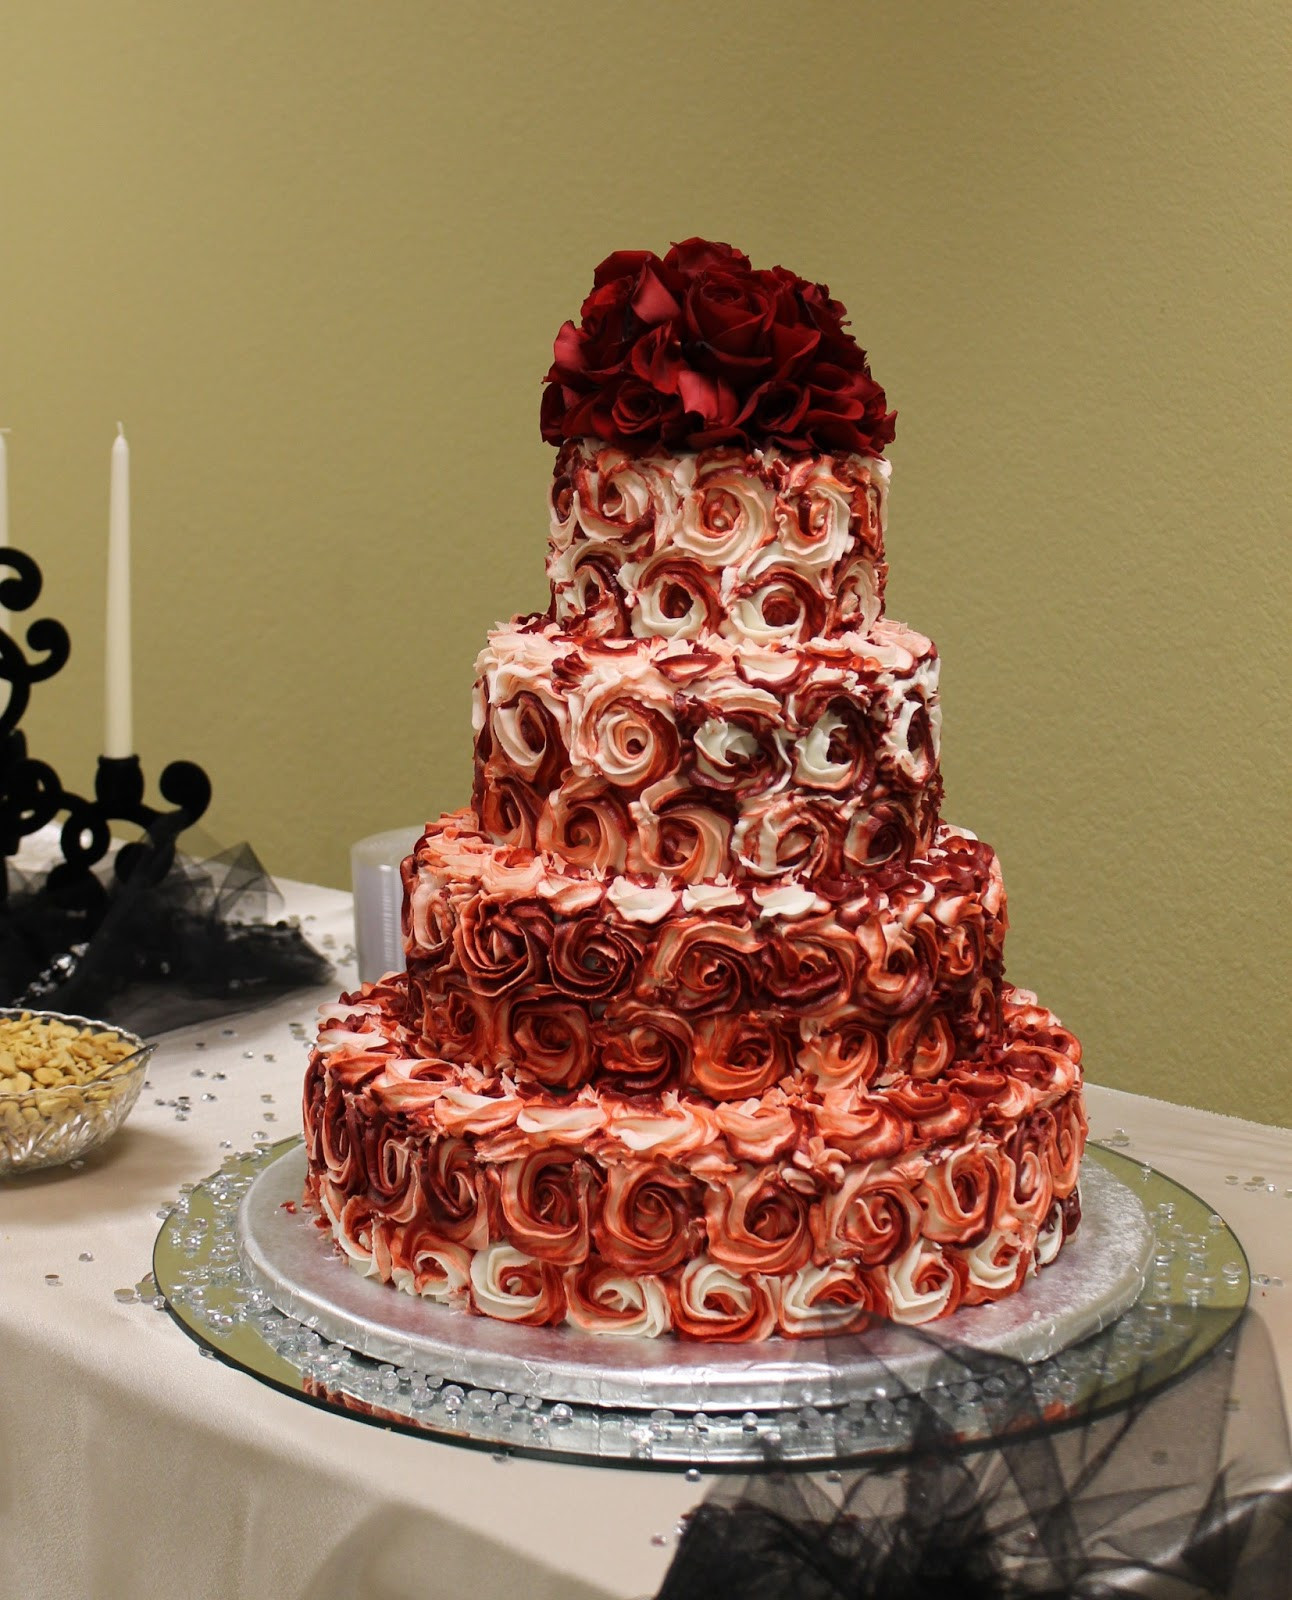 Red Velvet Wedding Cake Recipe
 The Simple Cake February 2013